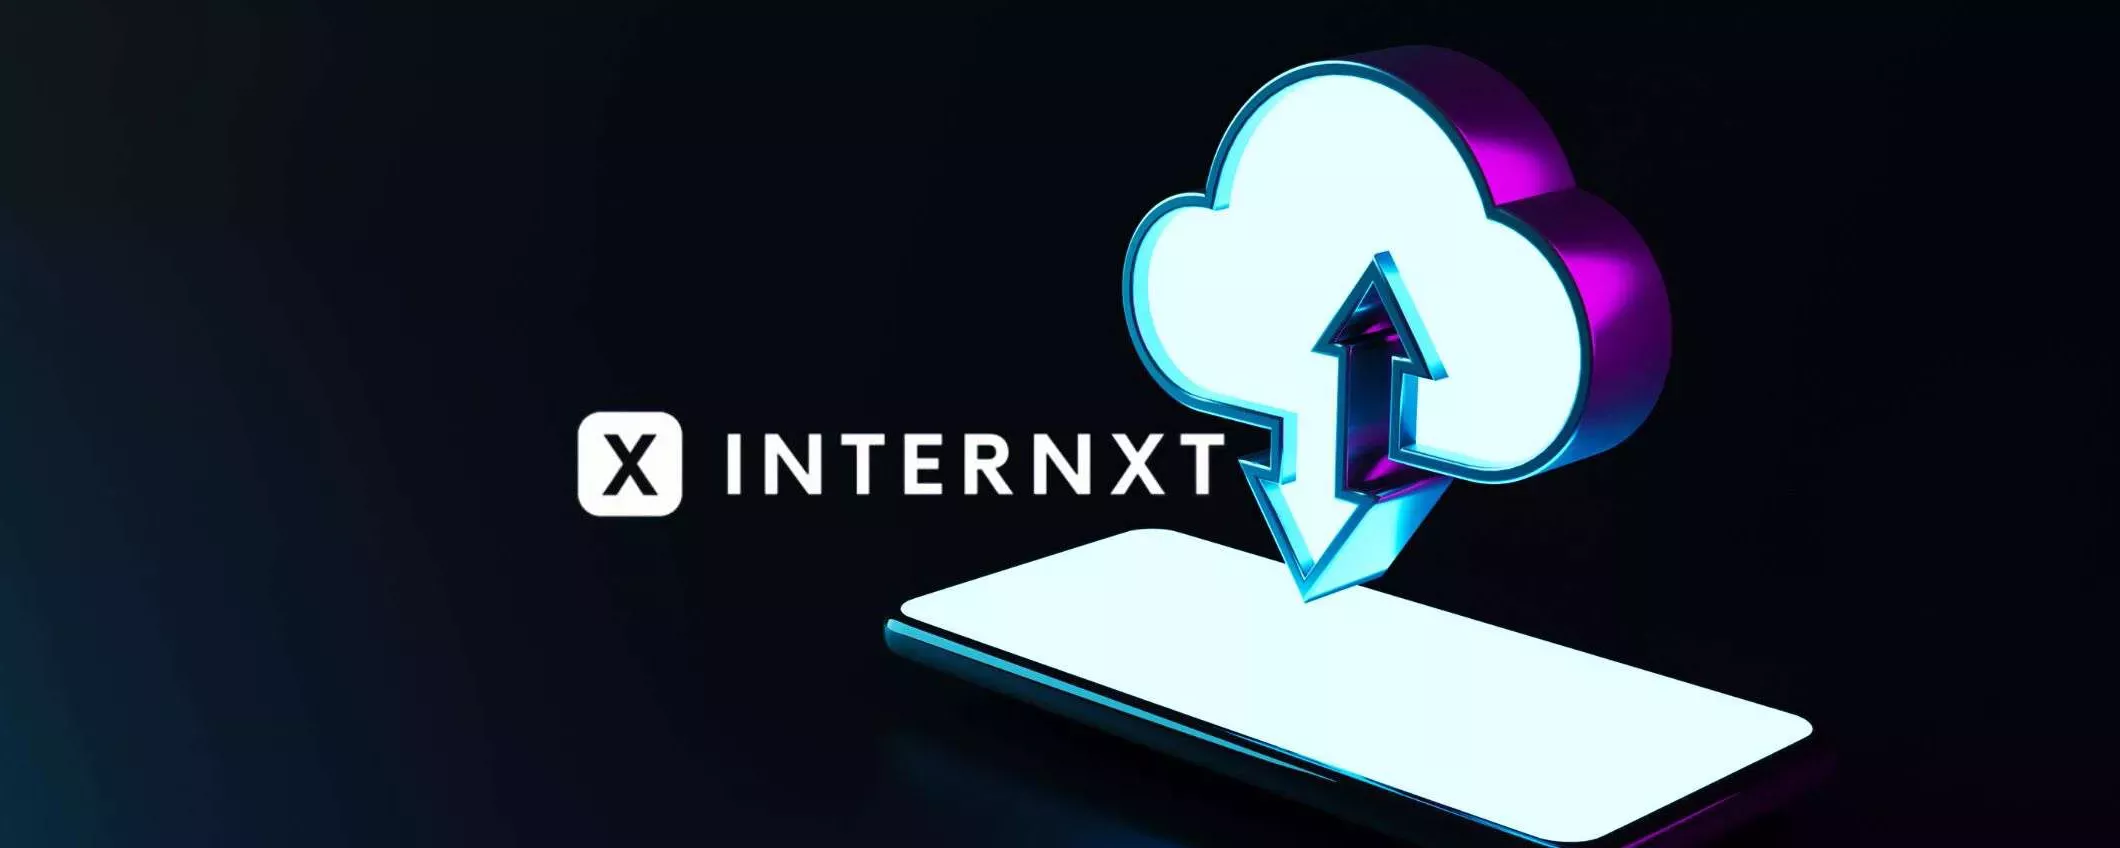 Offerta speciale: cloud senza limiti di Internxt a un terzo del costo